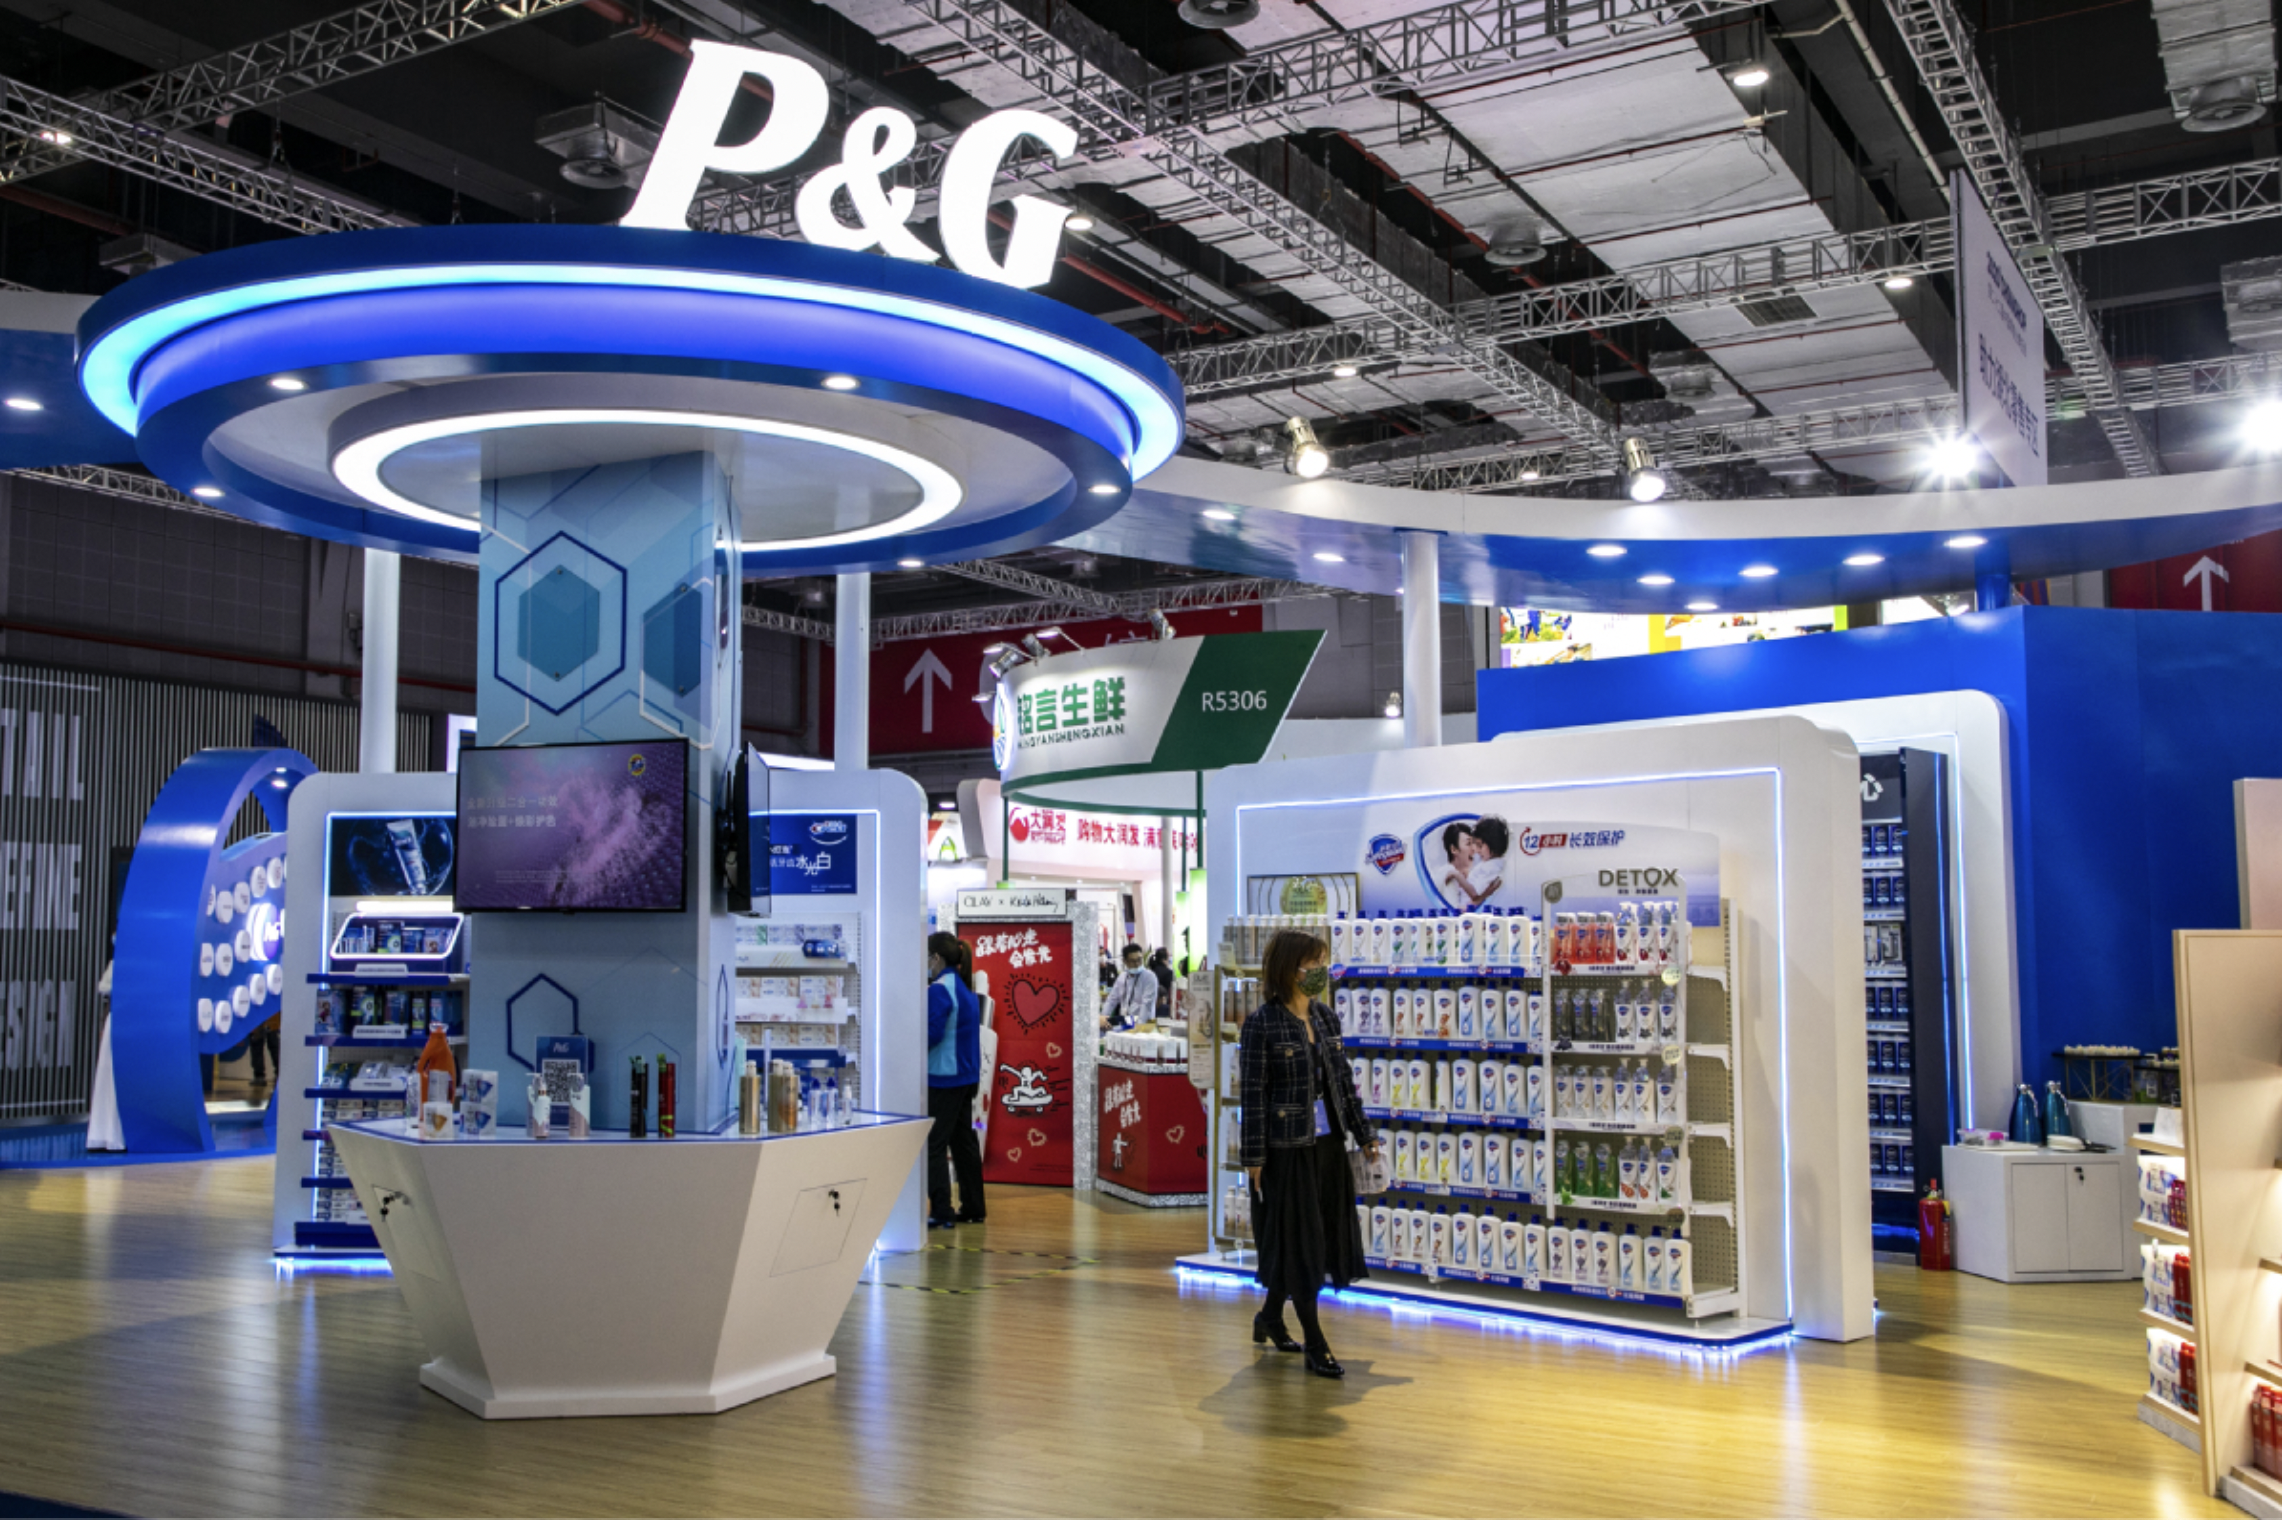 🛒 Procter & Gamble’dan, Beklentilerin Üzerinde Çeyreklik Bilanço Geldi